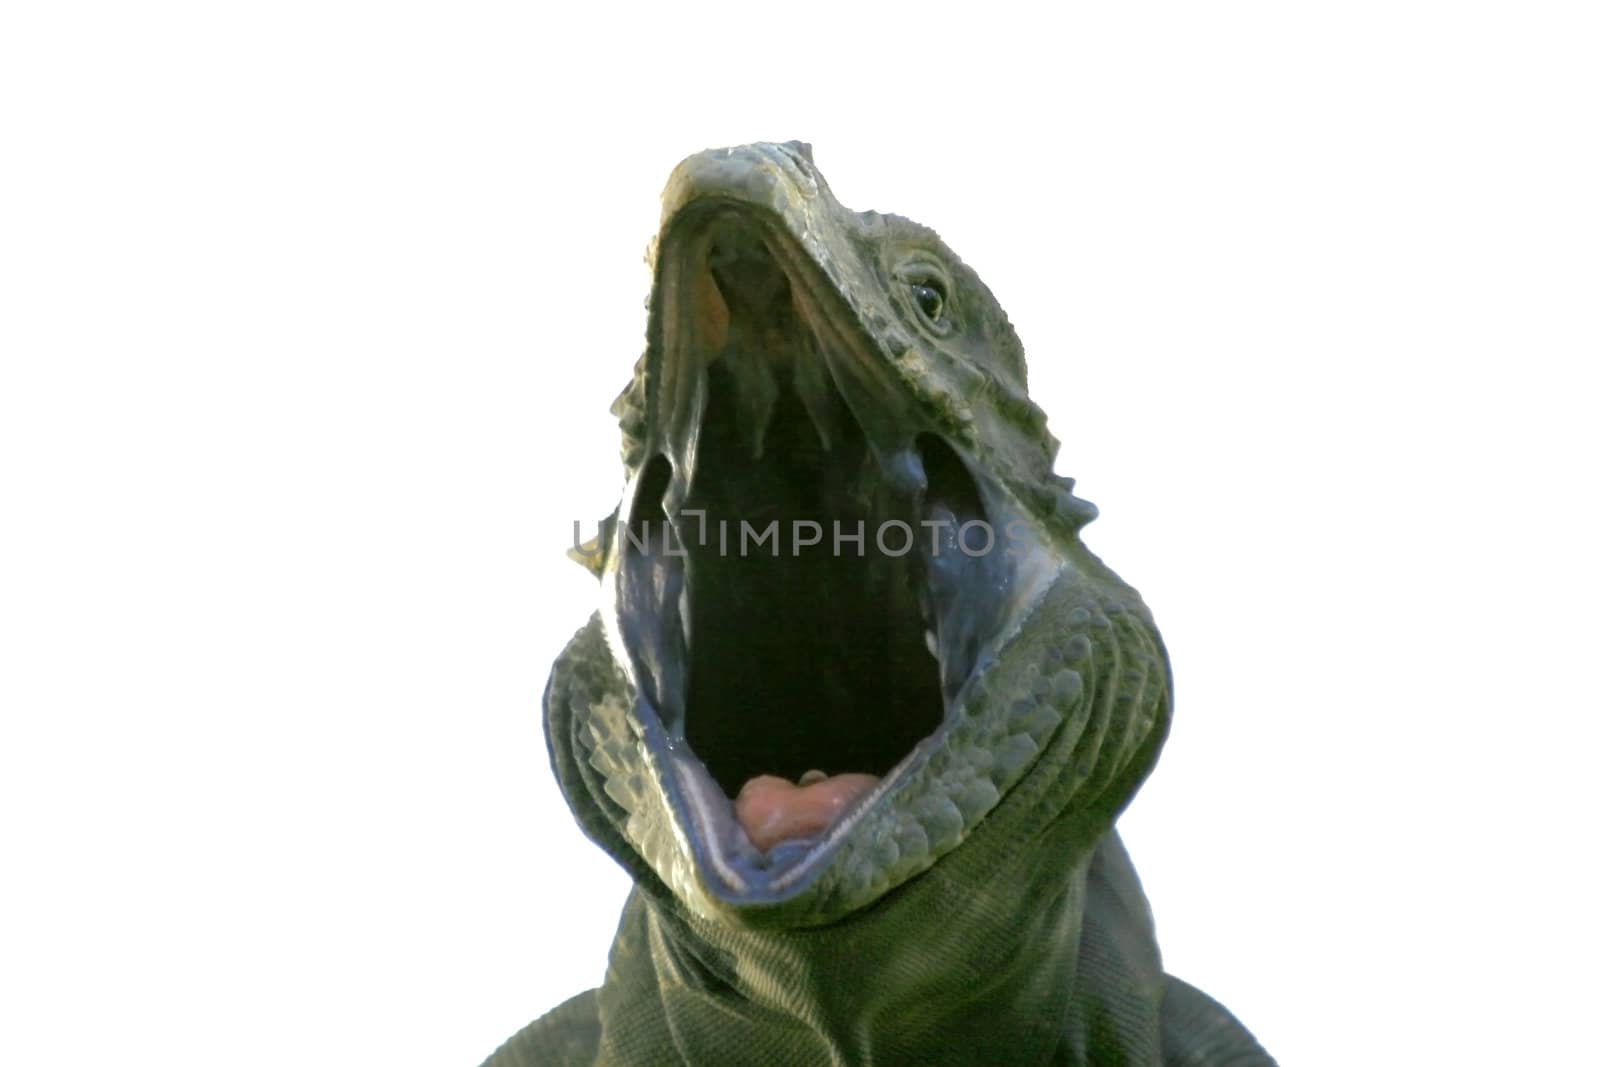 Iguana yawning over white background